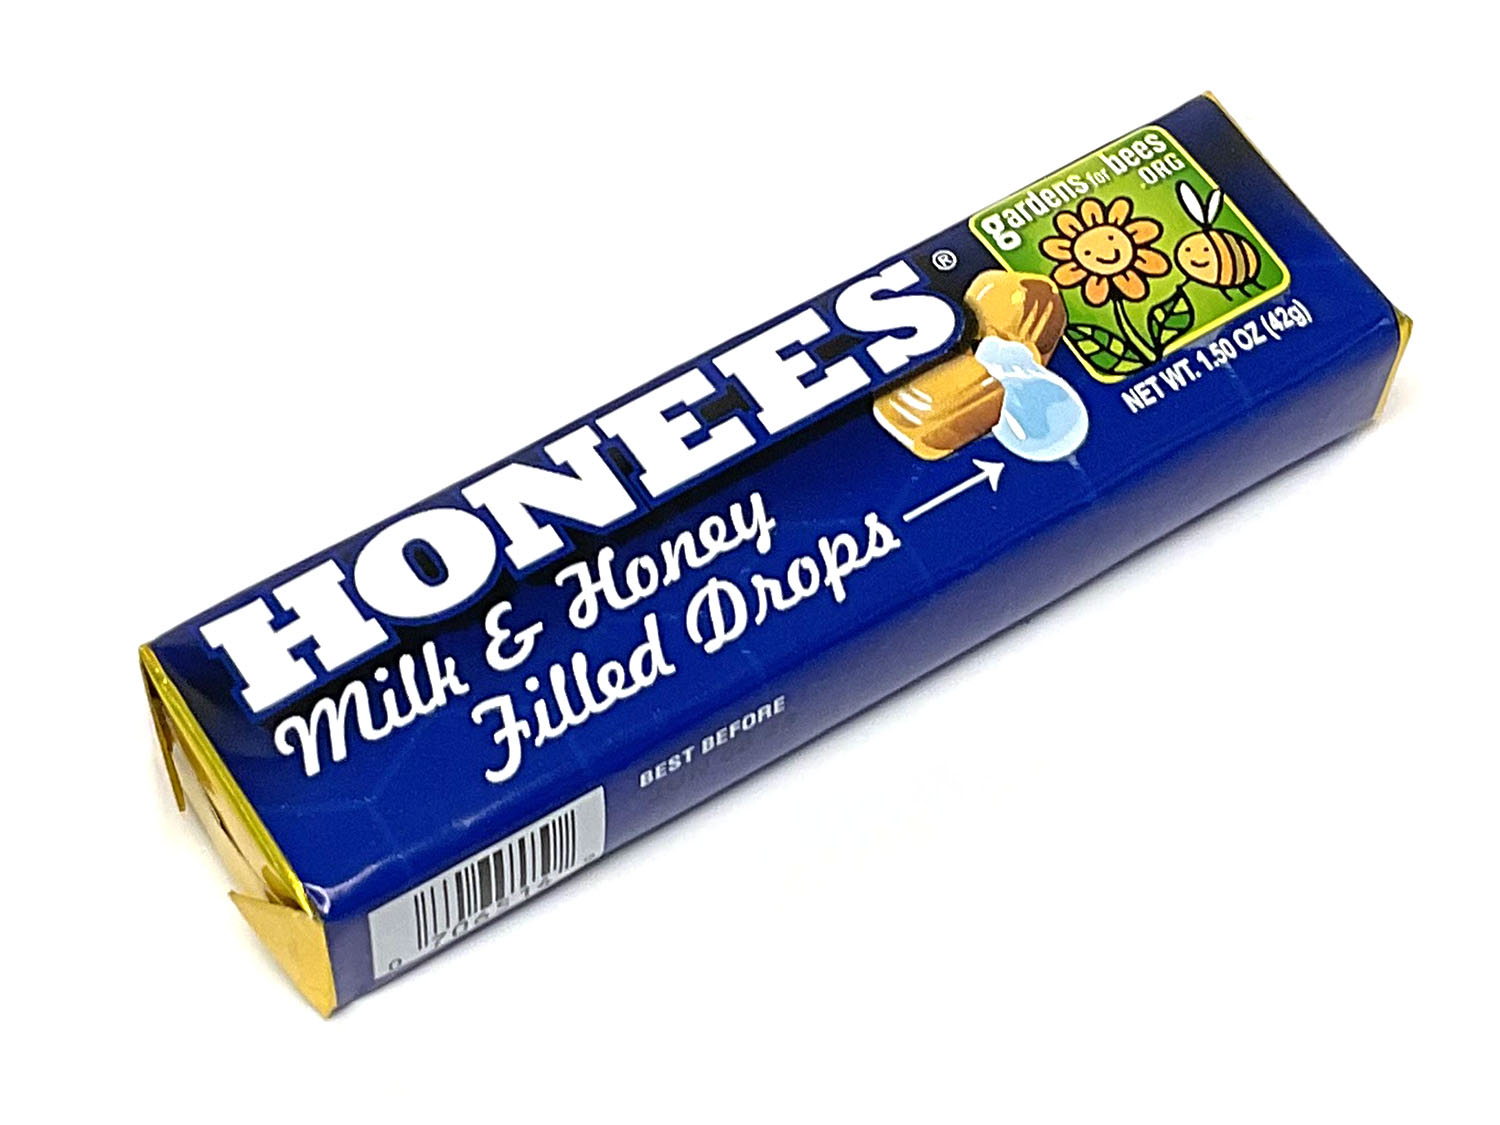 Honees Milk & Honey Drops - 1.5 oz pkg